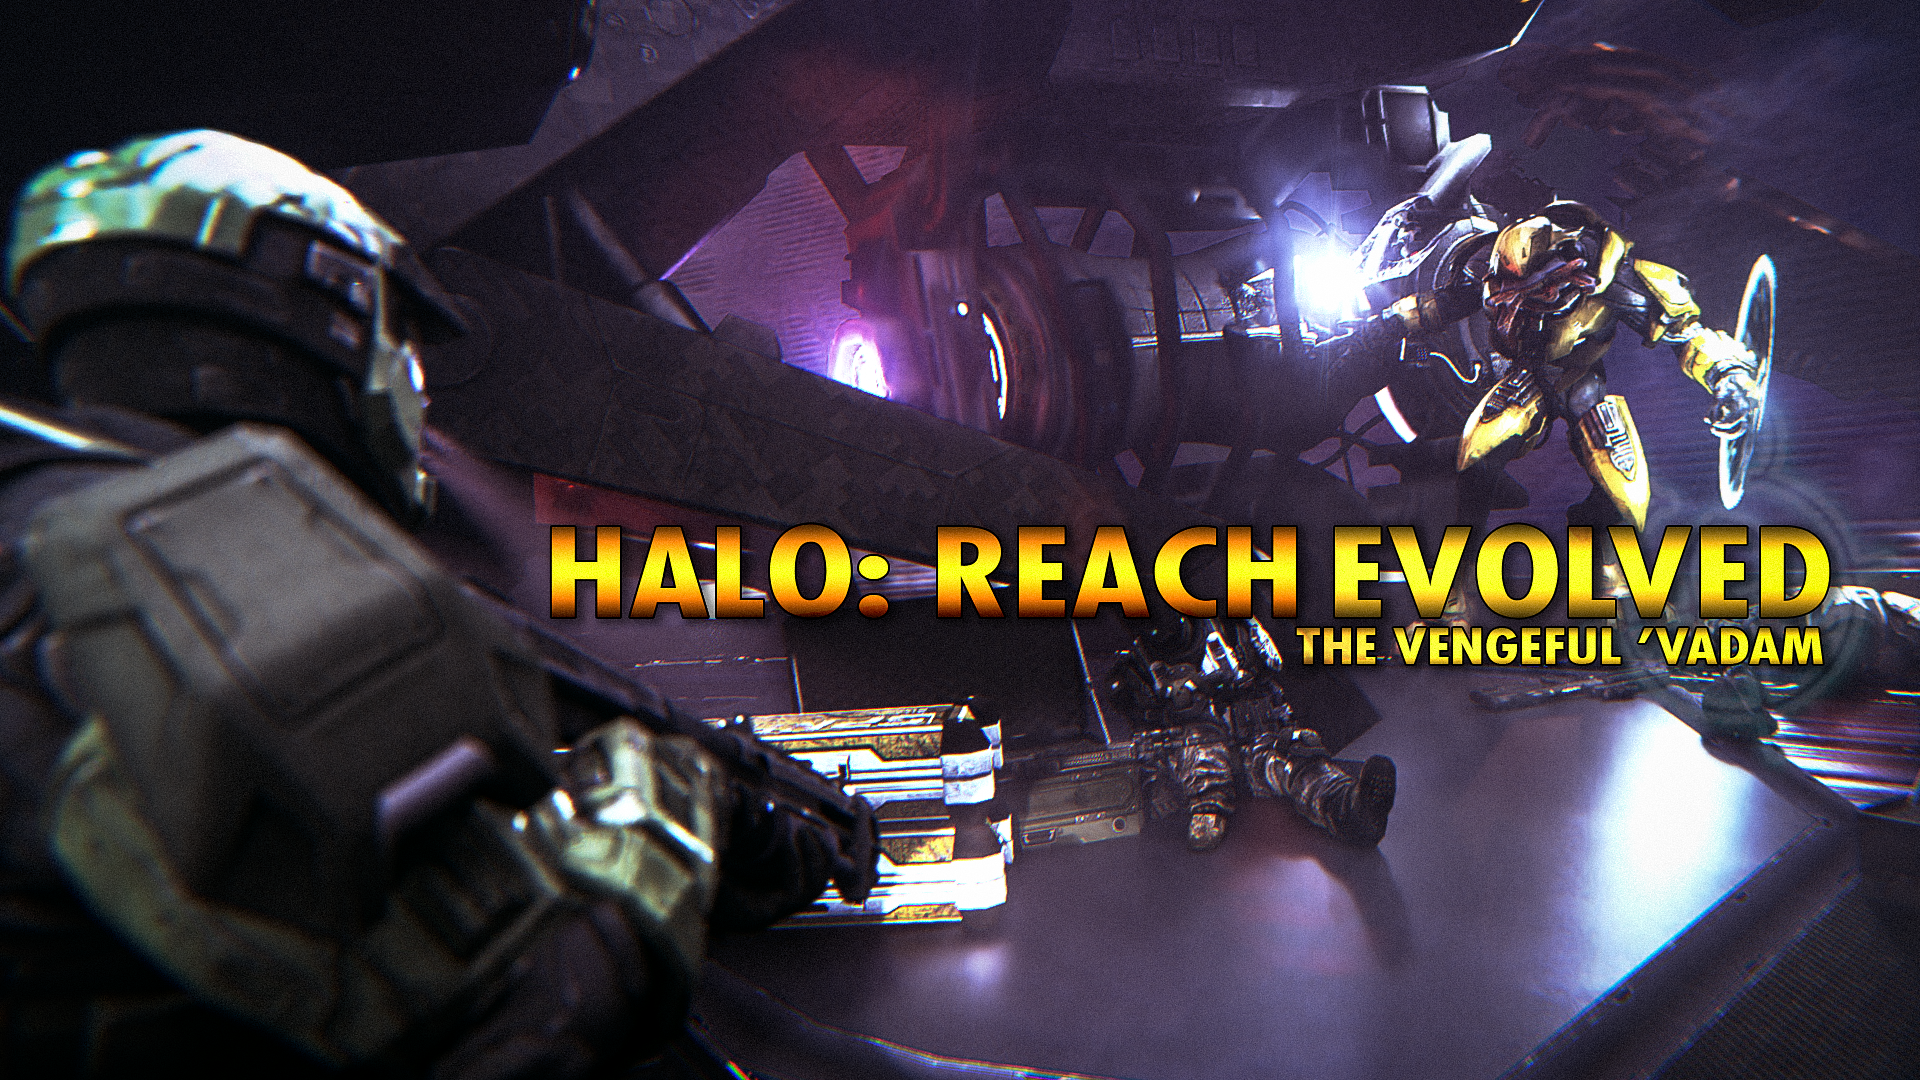 Steam Workshop::Halo Reach Multiplayer Elites Campaign